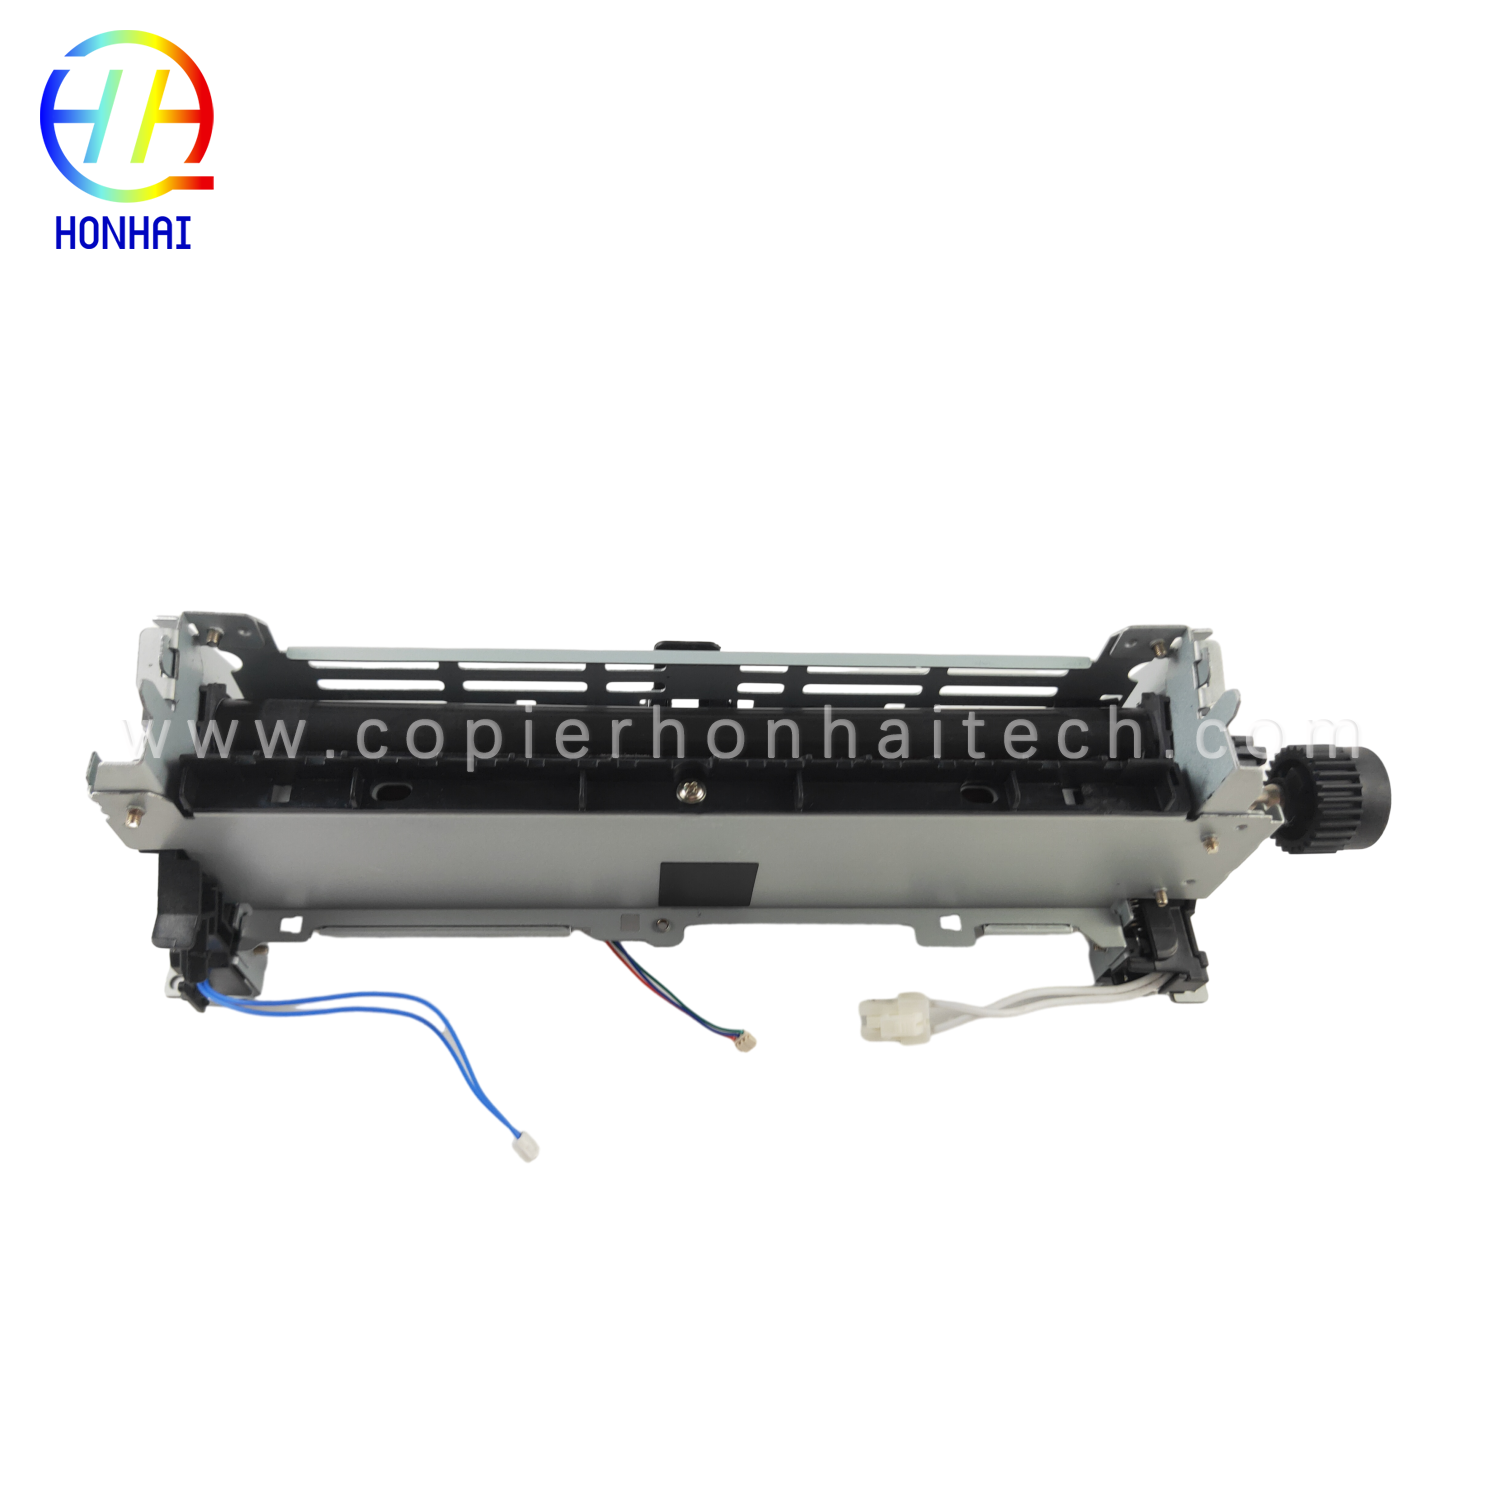 https://www.copierhonhaitech.com/fuser-assembly-for-hp-laserjet-pro-400-m401n-m401dn-m401dw-mfp-m425dn-m425dw-rm1-8809-000-fuser-unit-product